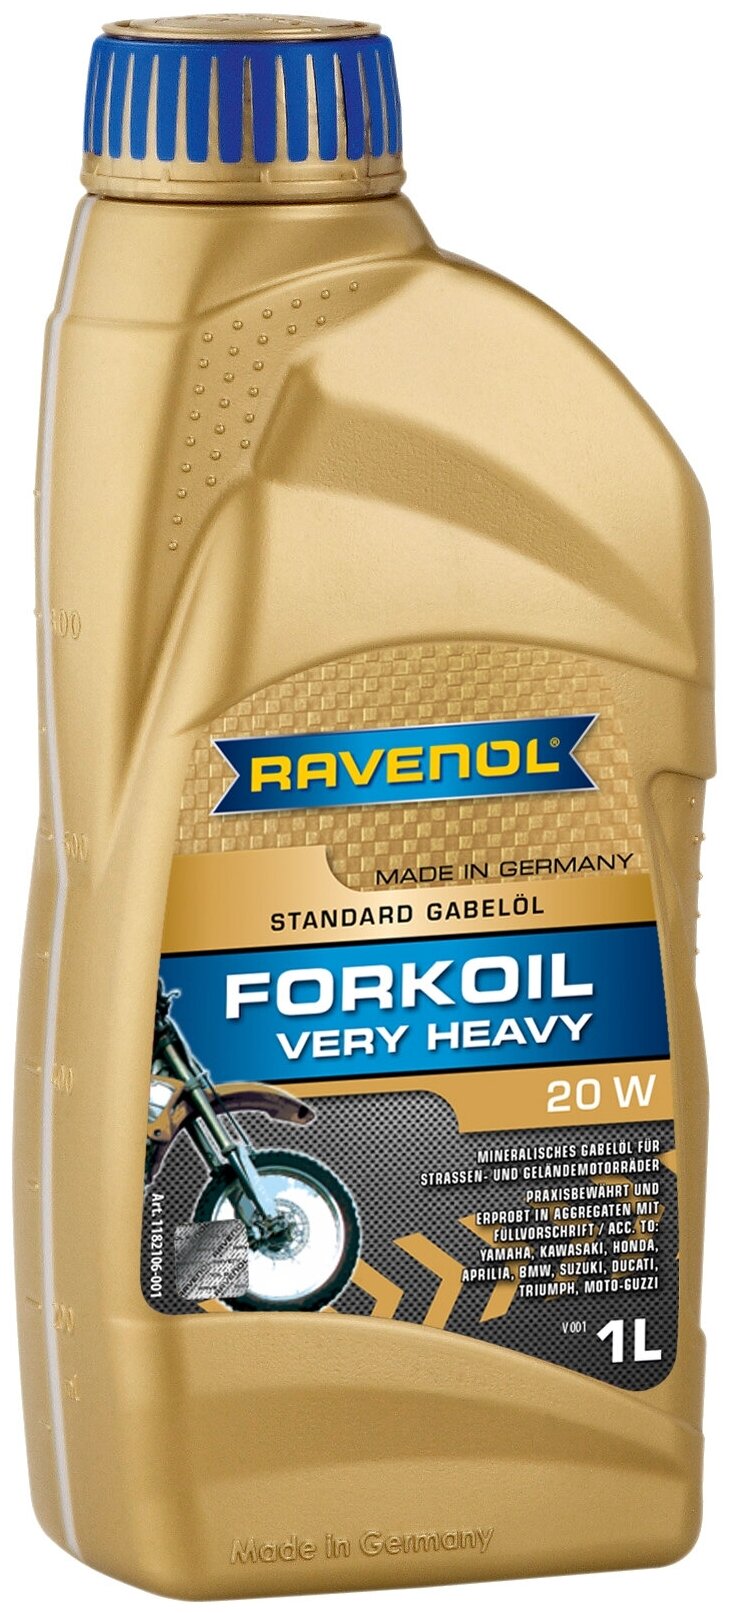 Вилочное Масло Ravenol Forkoil Very Heavy 20w (1л) Ravenol арт. 1182106-001-01-999